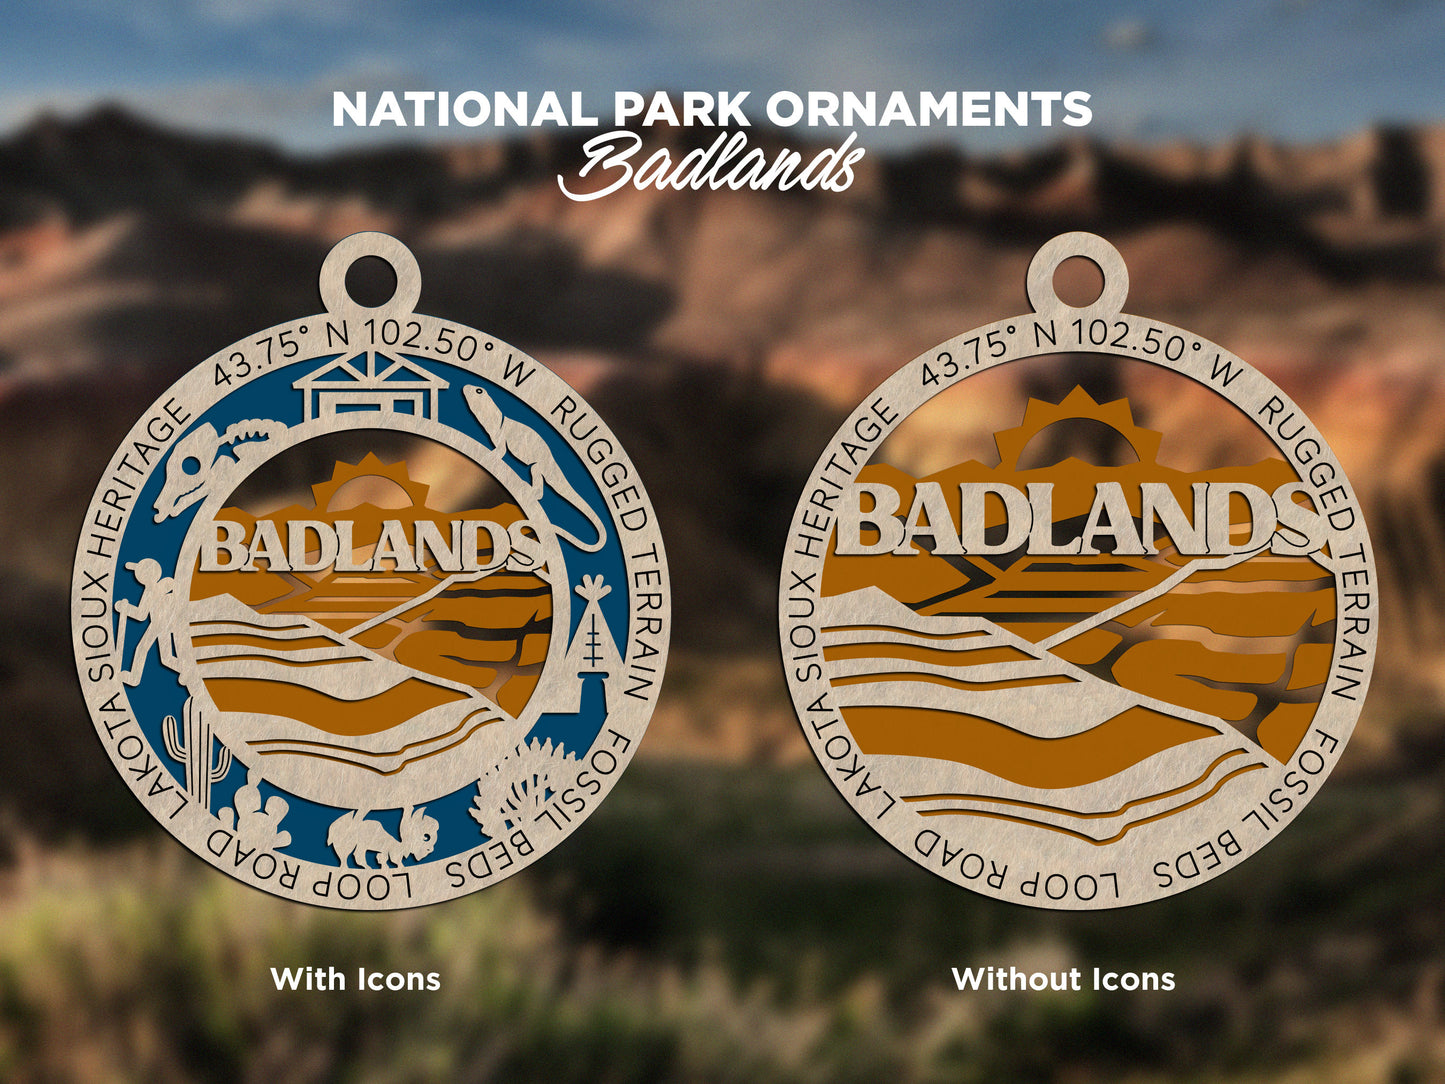 Badlands Park Ornament - Includes 2 Ornaments - Laser Design SVG, PDF, AI File Download - Tested On Glowforge and LightBurn